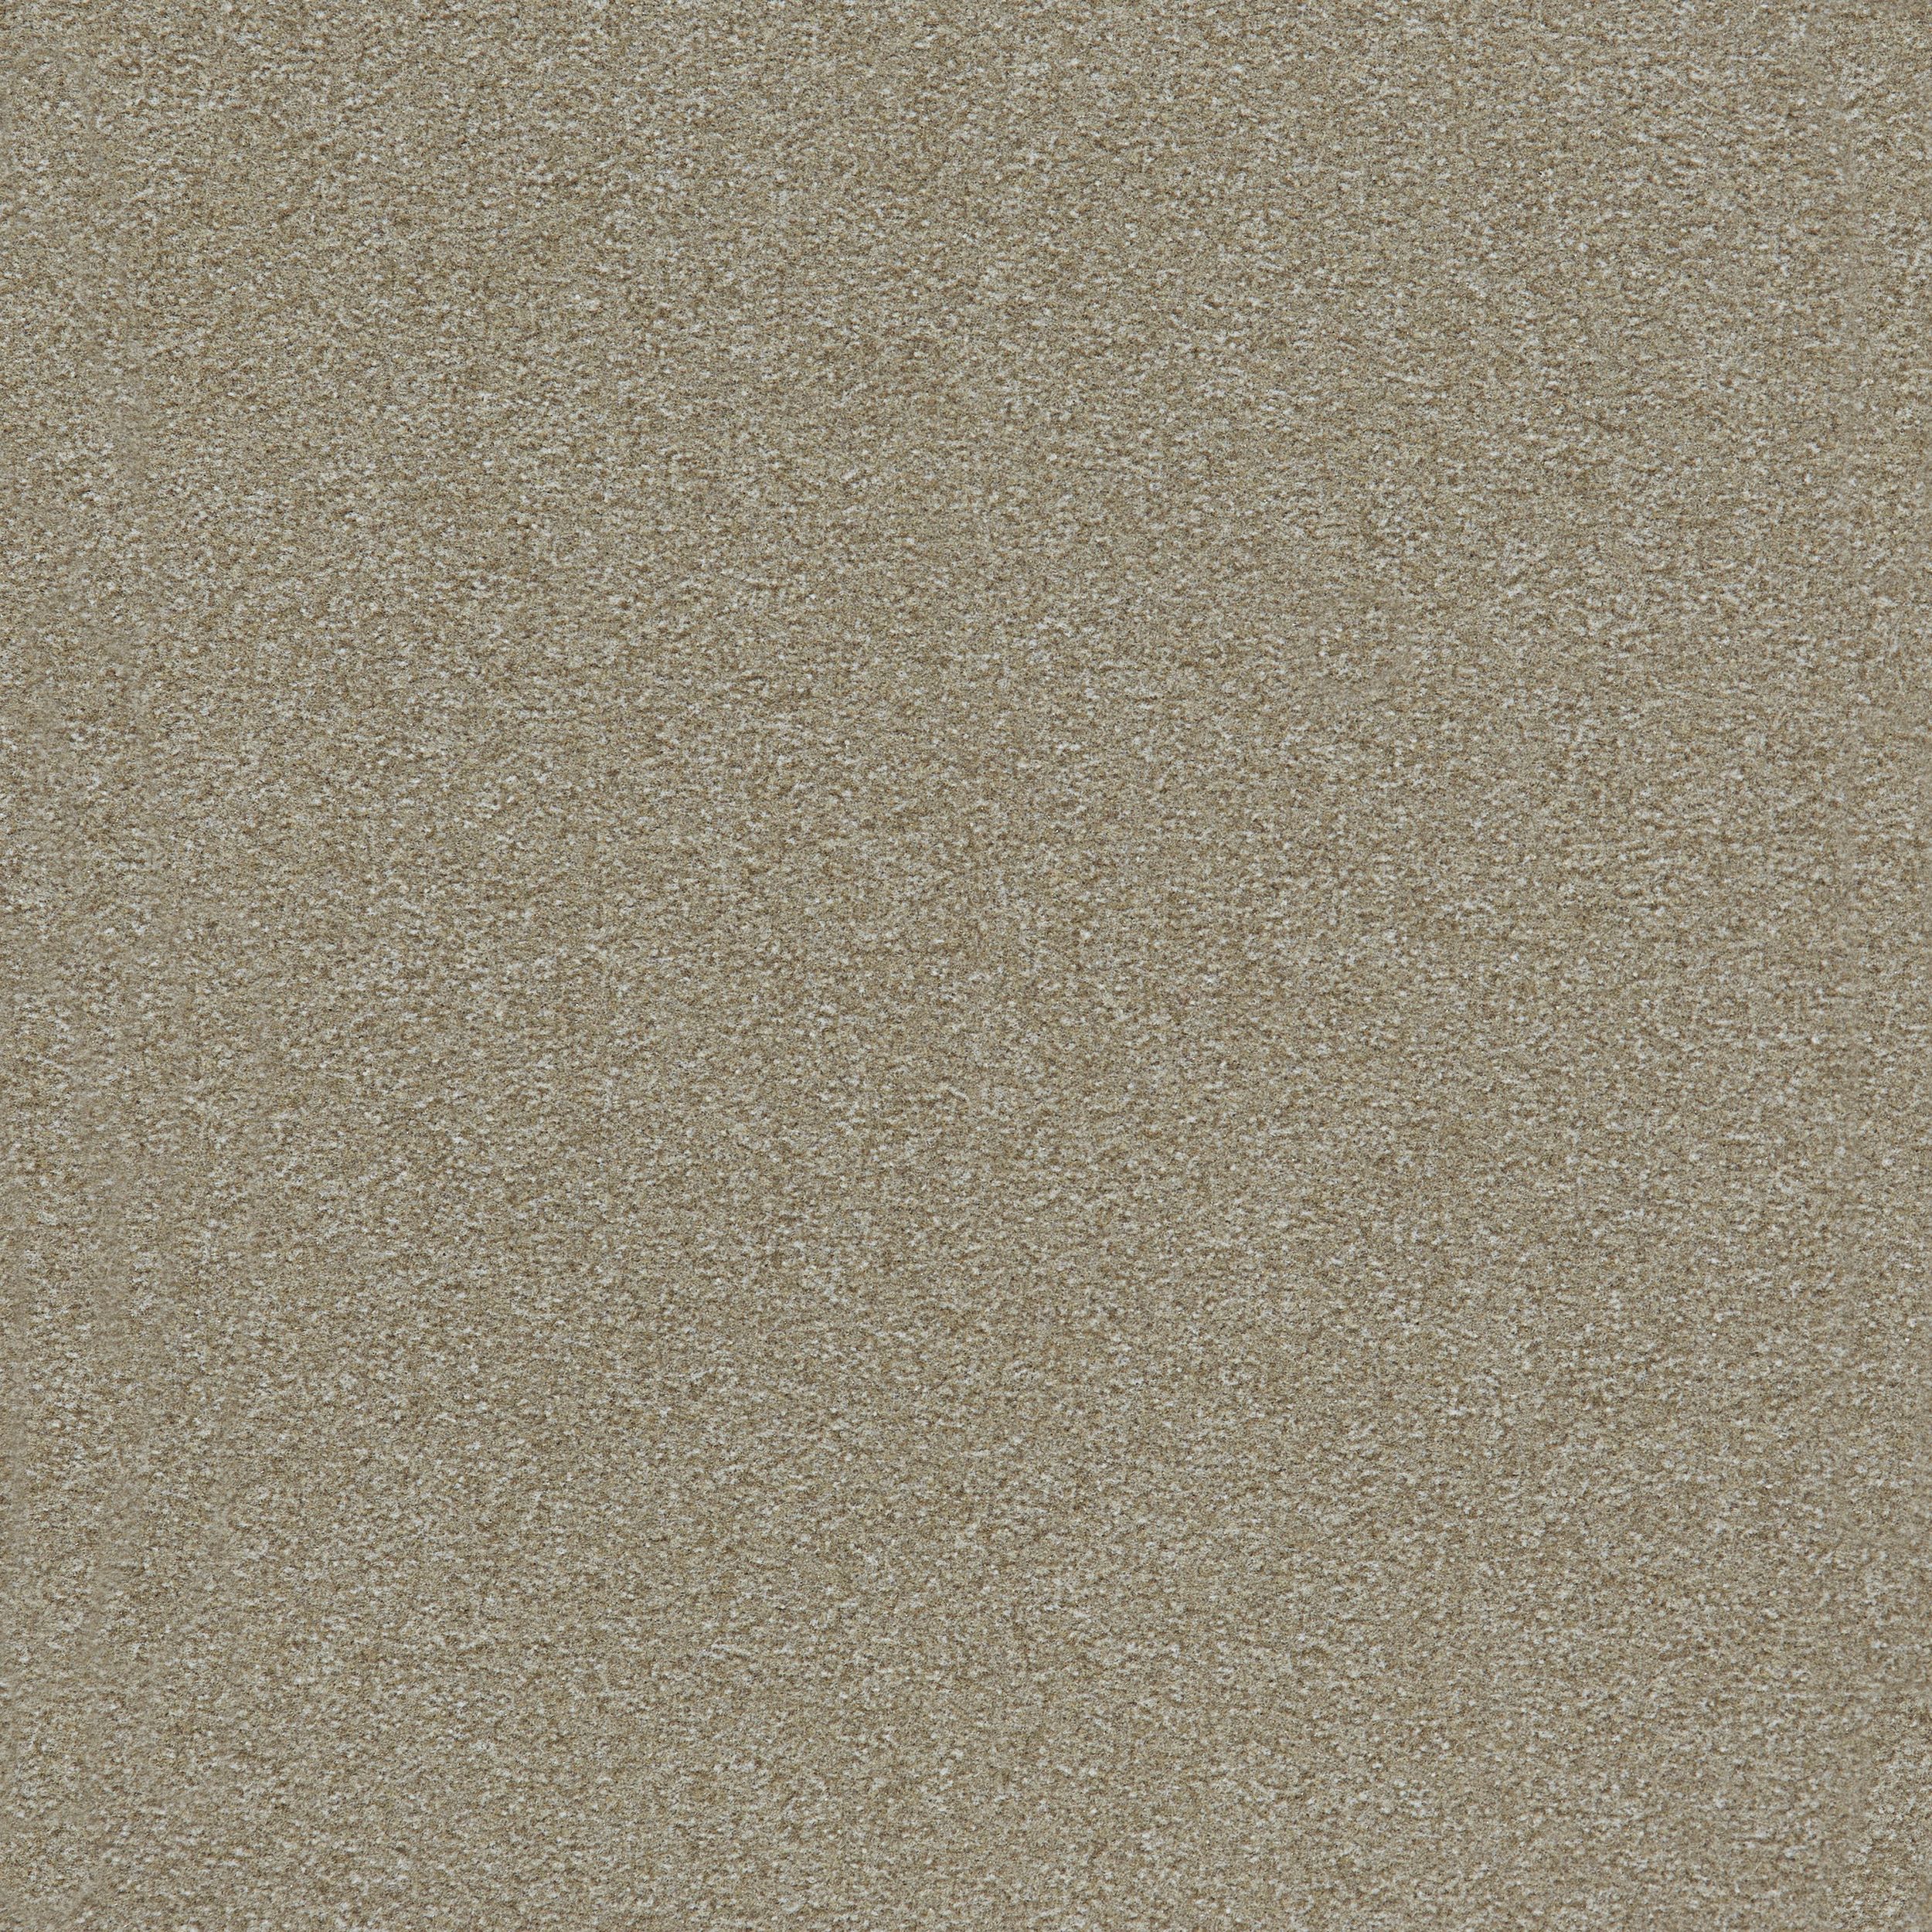 Heuga 725 Carpet Tile In Oyster Bildnummer 4